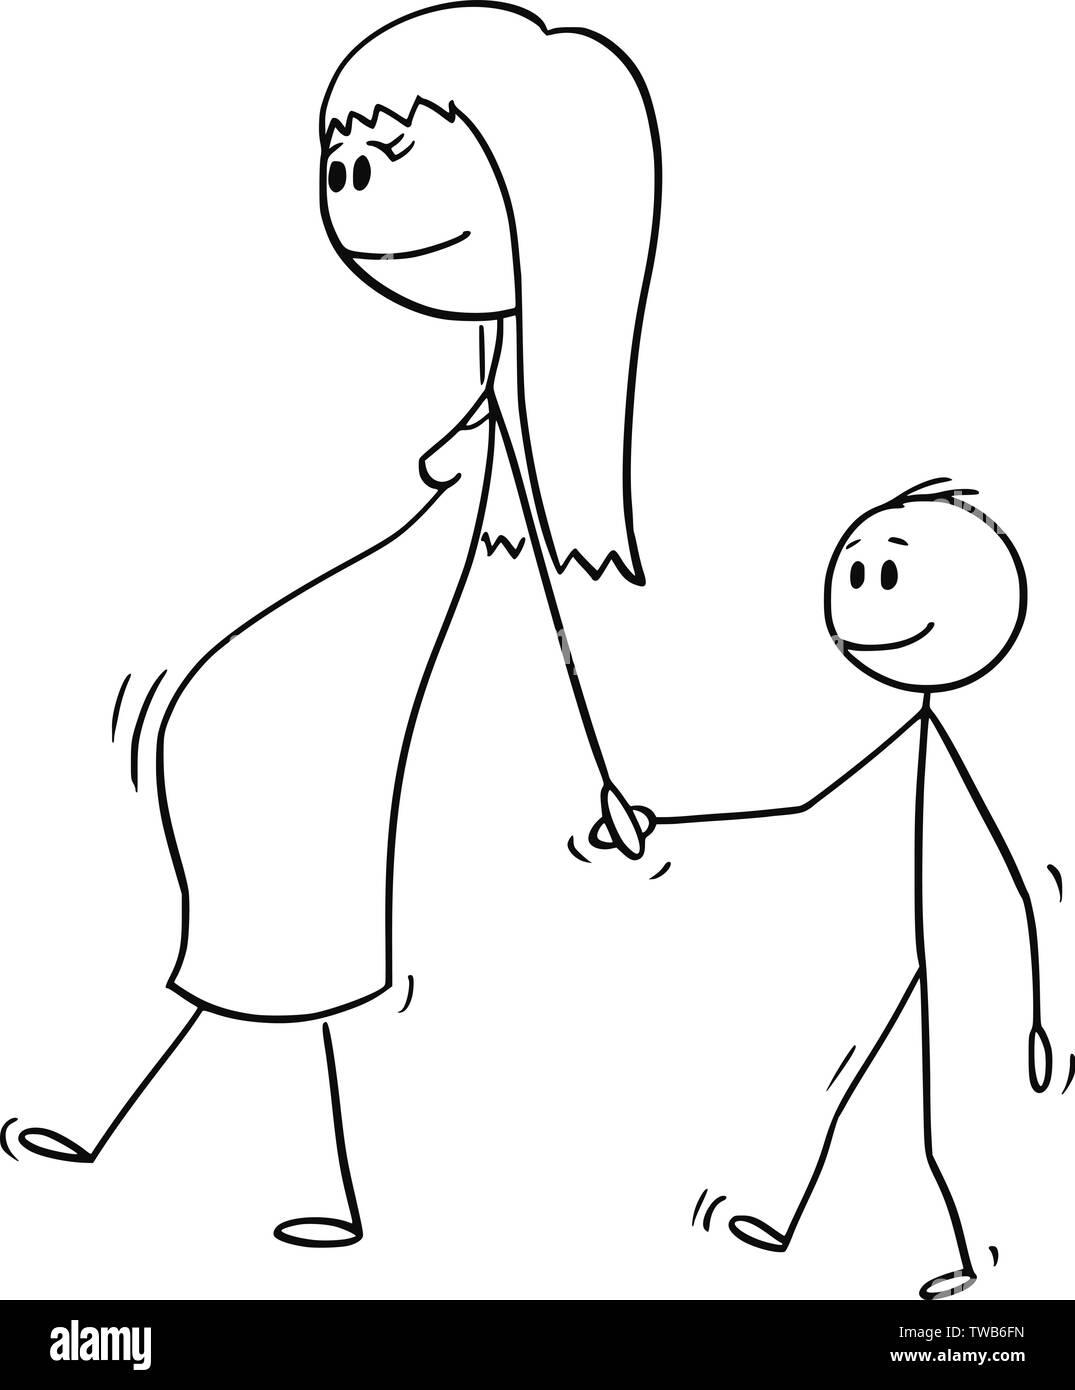 Vector cartoon stick figura disegno illustrazione concettuale della donna incinta o mom o della madre insieme con il piccolo ragazzo o figlio. Essi sono a piedi e tenendo le mani. Illustrazione Vettoriale